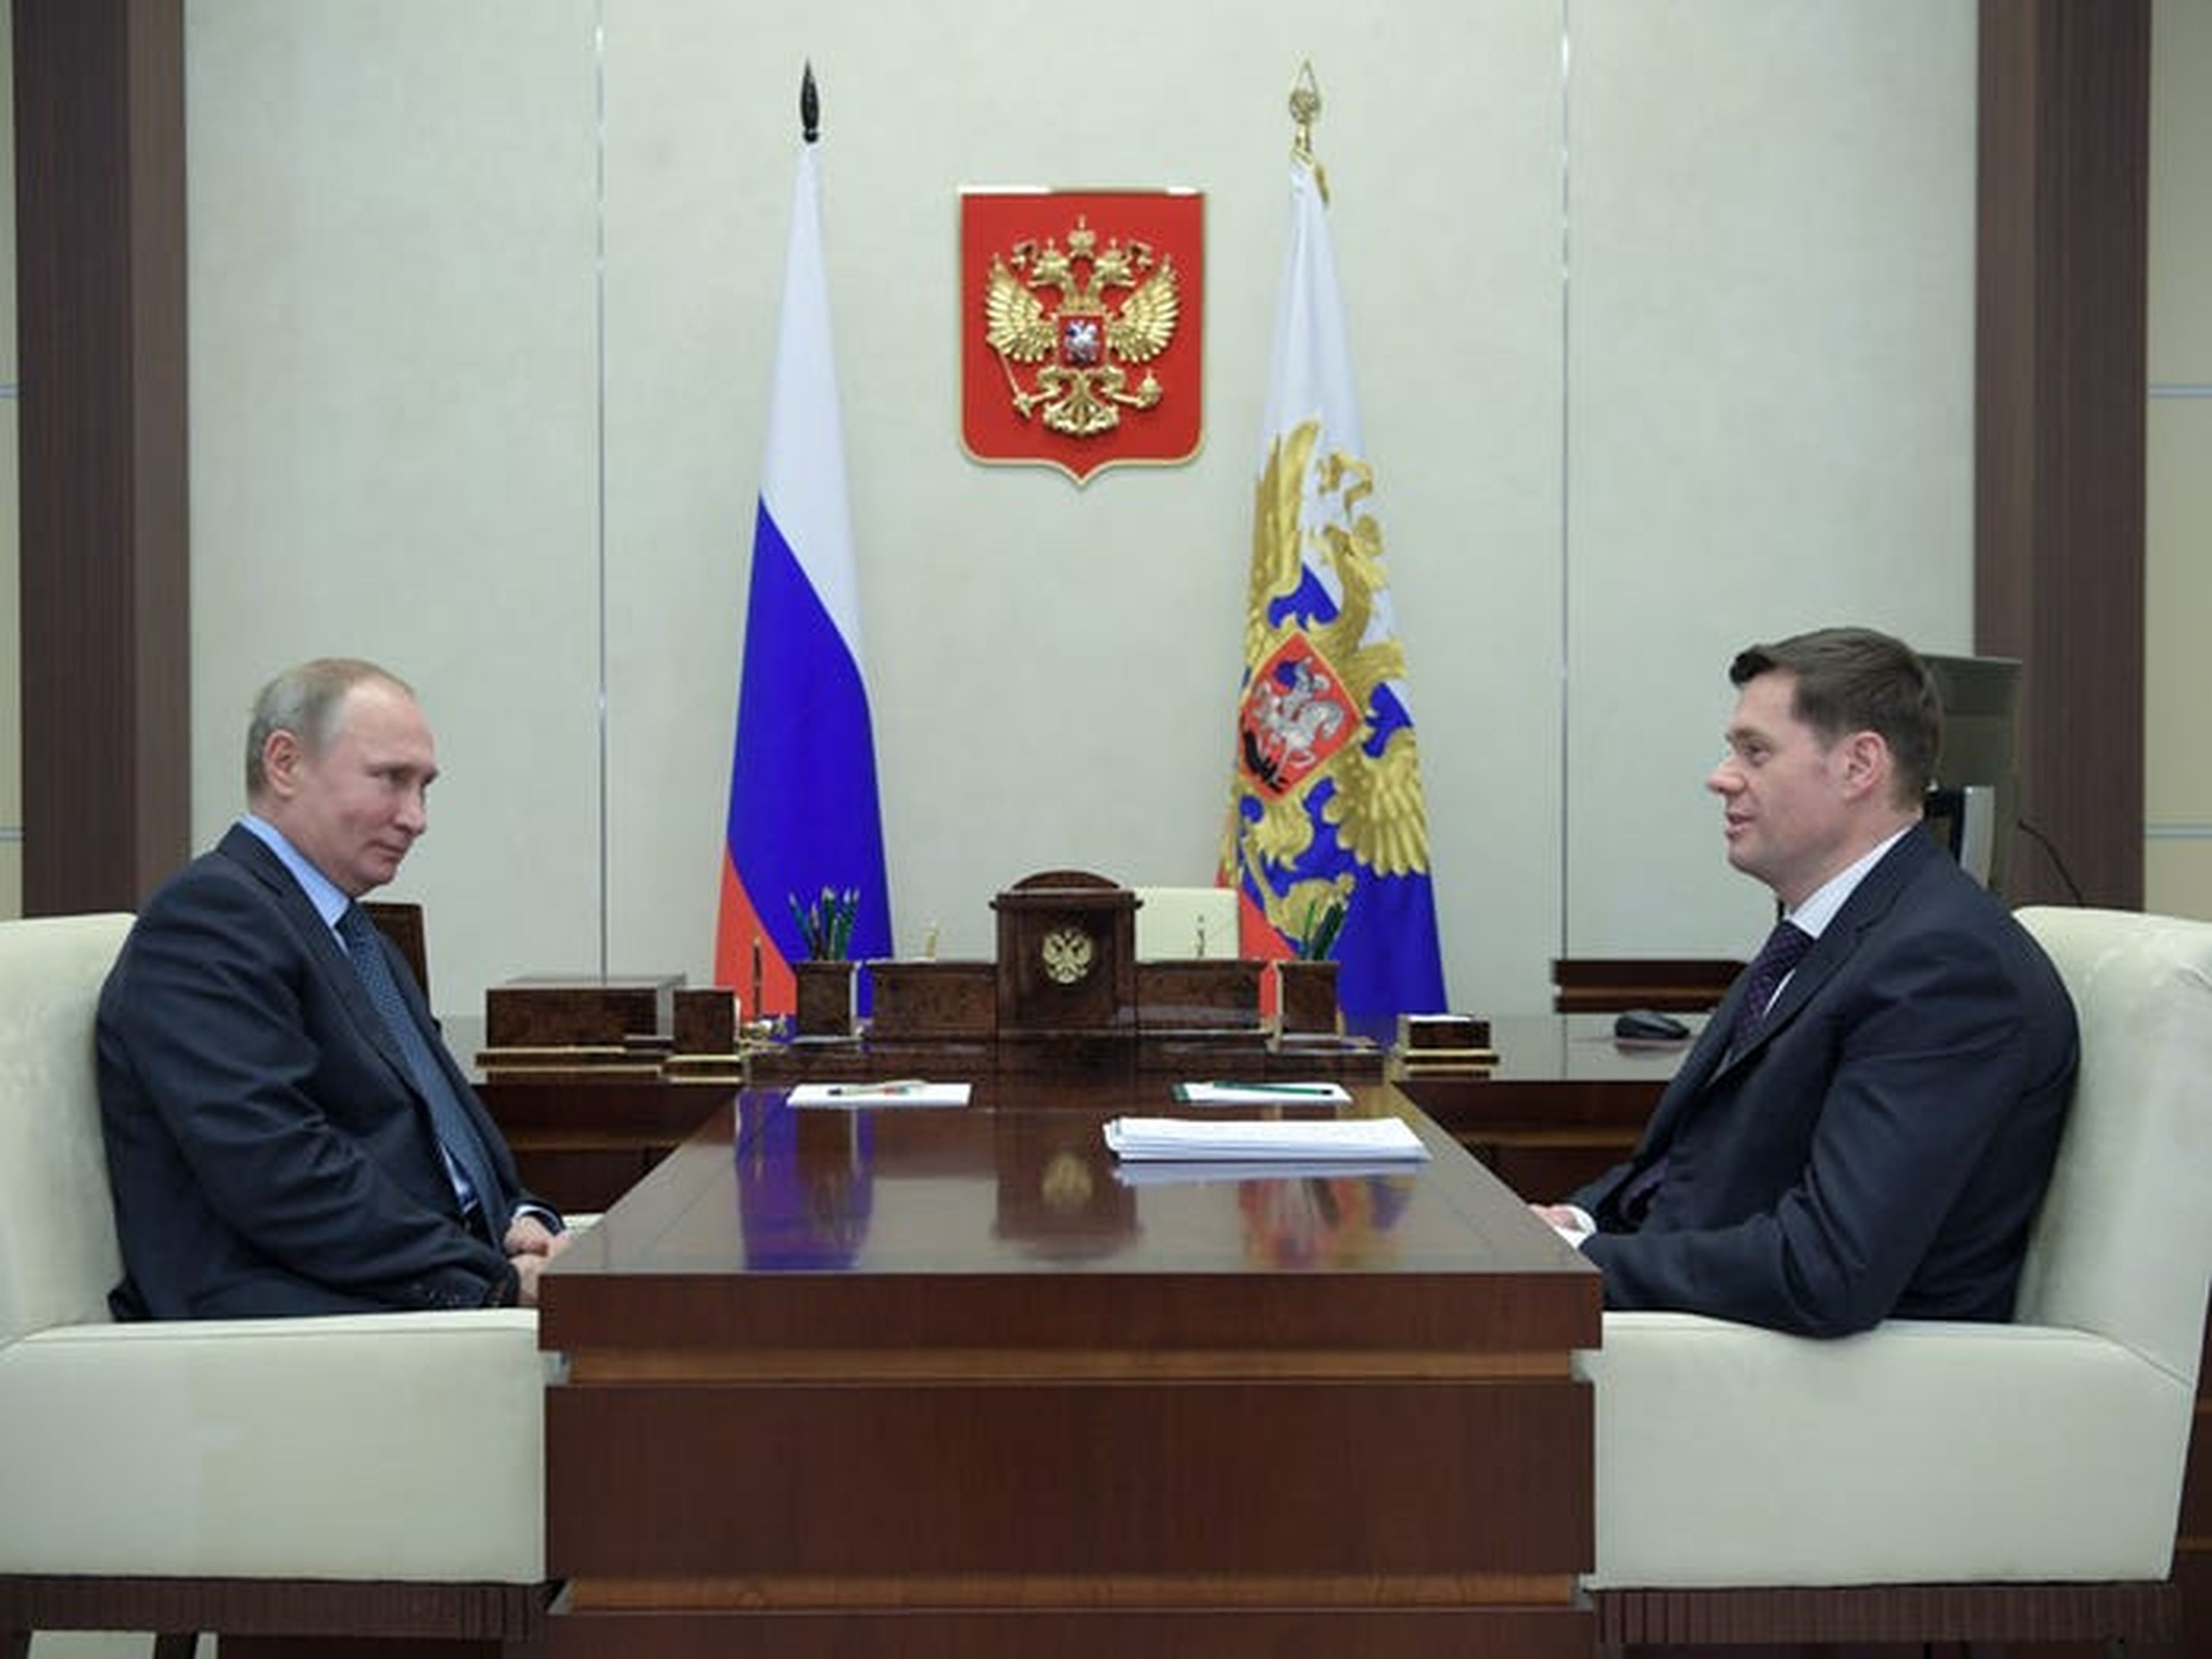 El presidente de Rusia, Vladímir Putin (izq.), y el presidente de la junta directiva de Severstal, Alexei Mordashov (drcha.), durante una reunión en 2018 en Moscú.